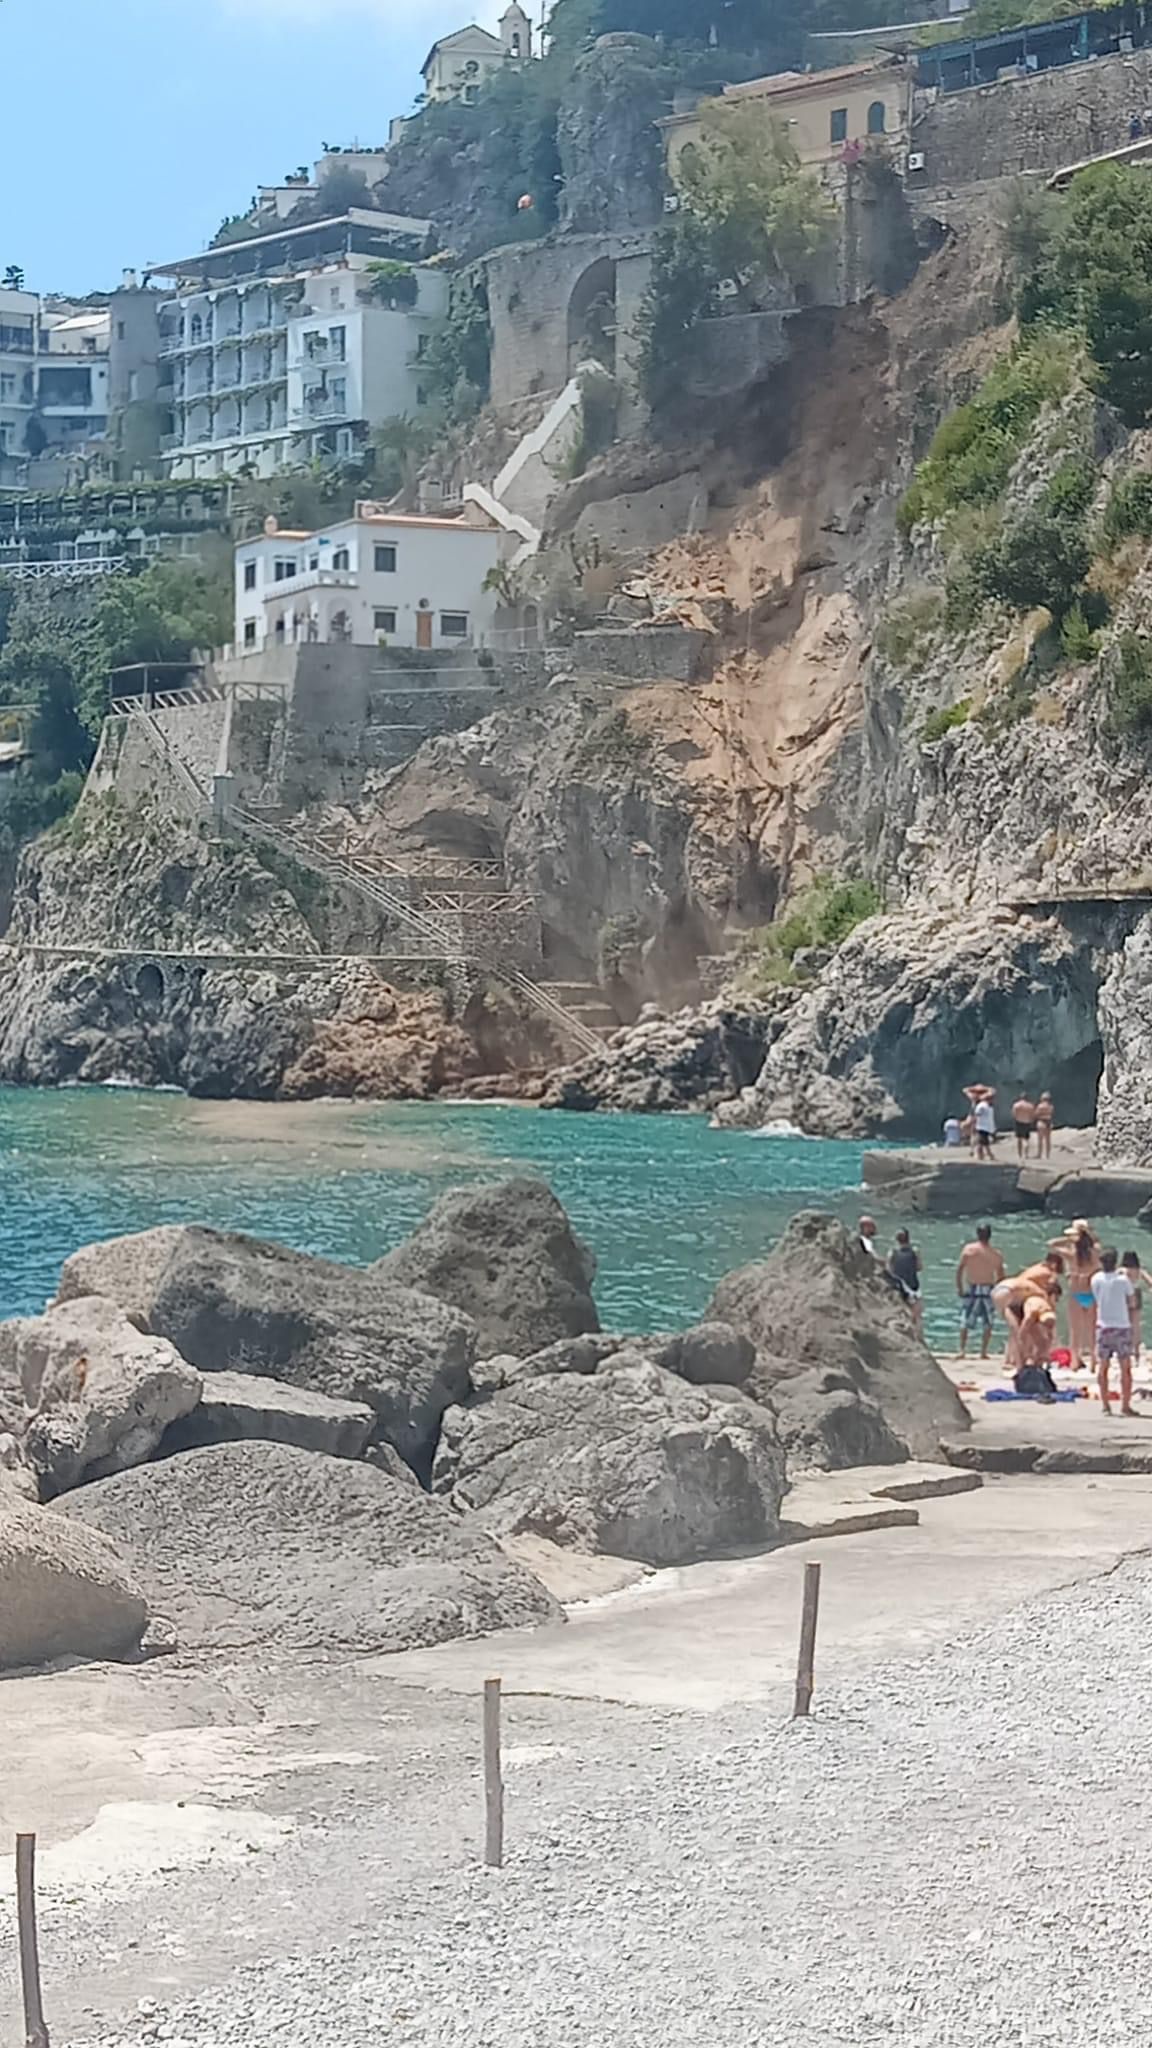 [VIDEO] Frana ad Amalfi, nessuna persona coinvolta, vigili del fuoco al lavoro